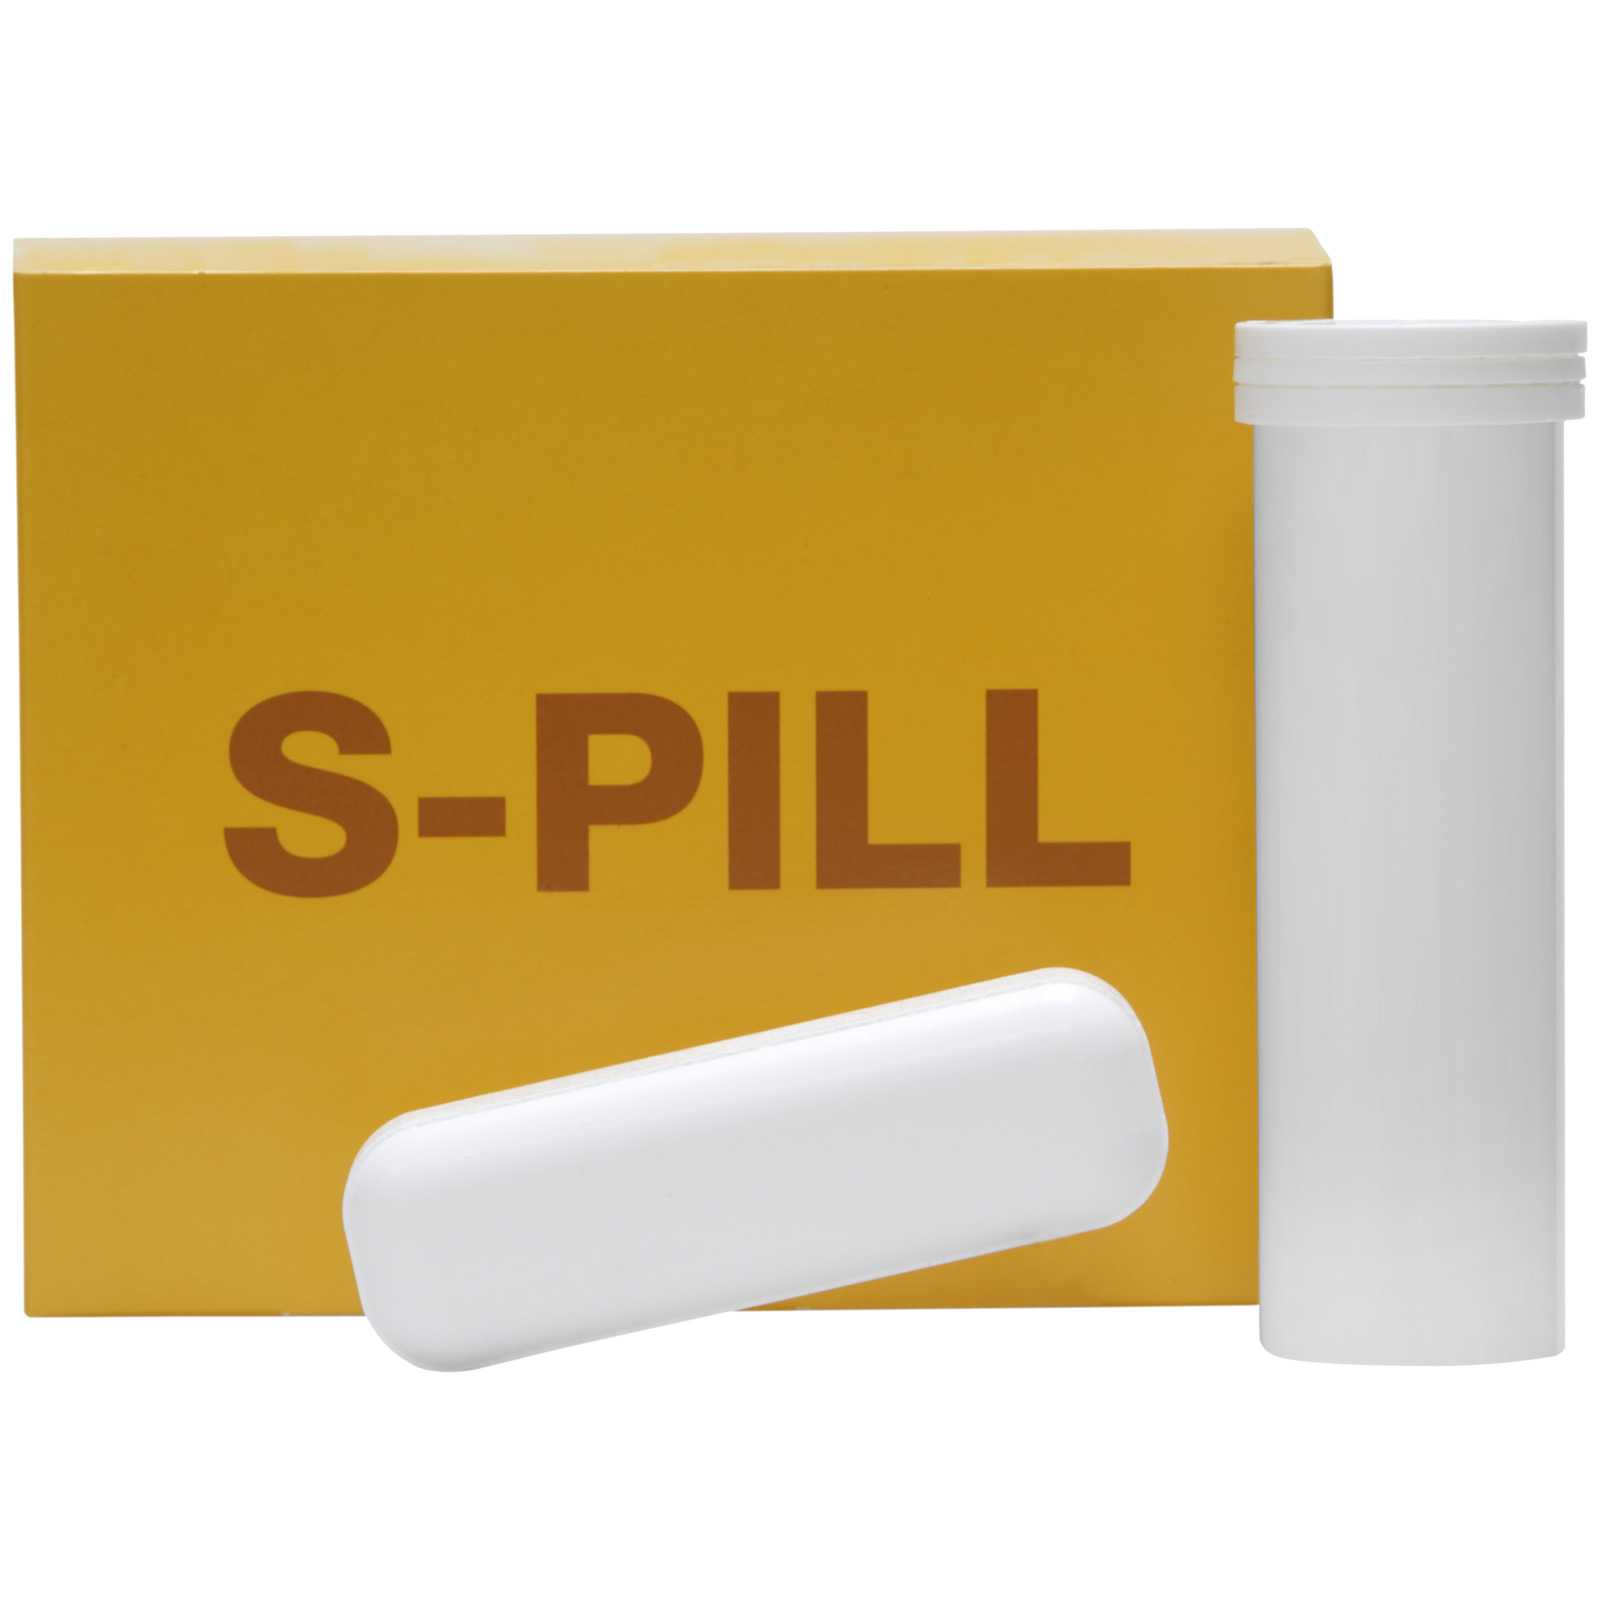 S-PILL tabletta bendő serkentéshez 4 x 100 g